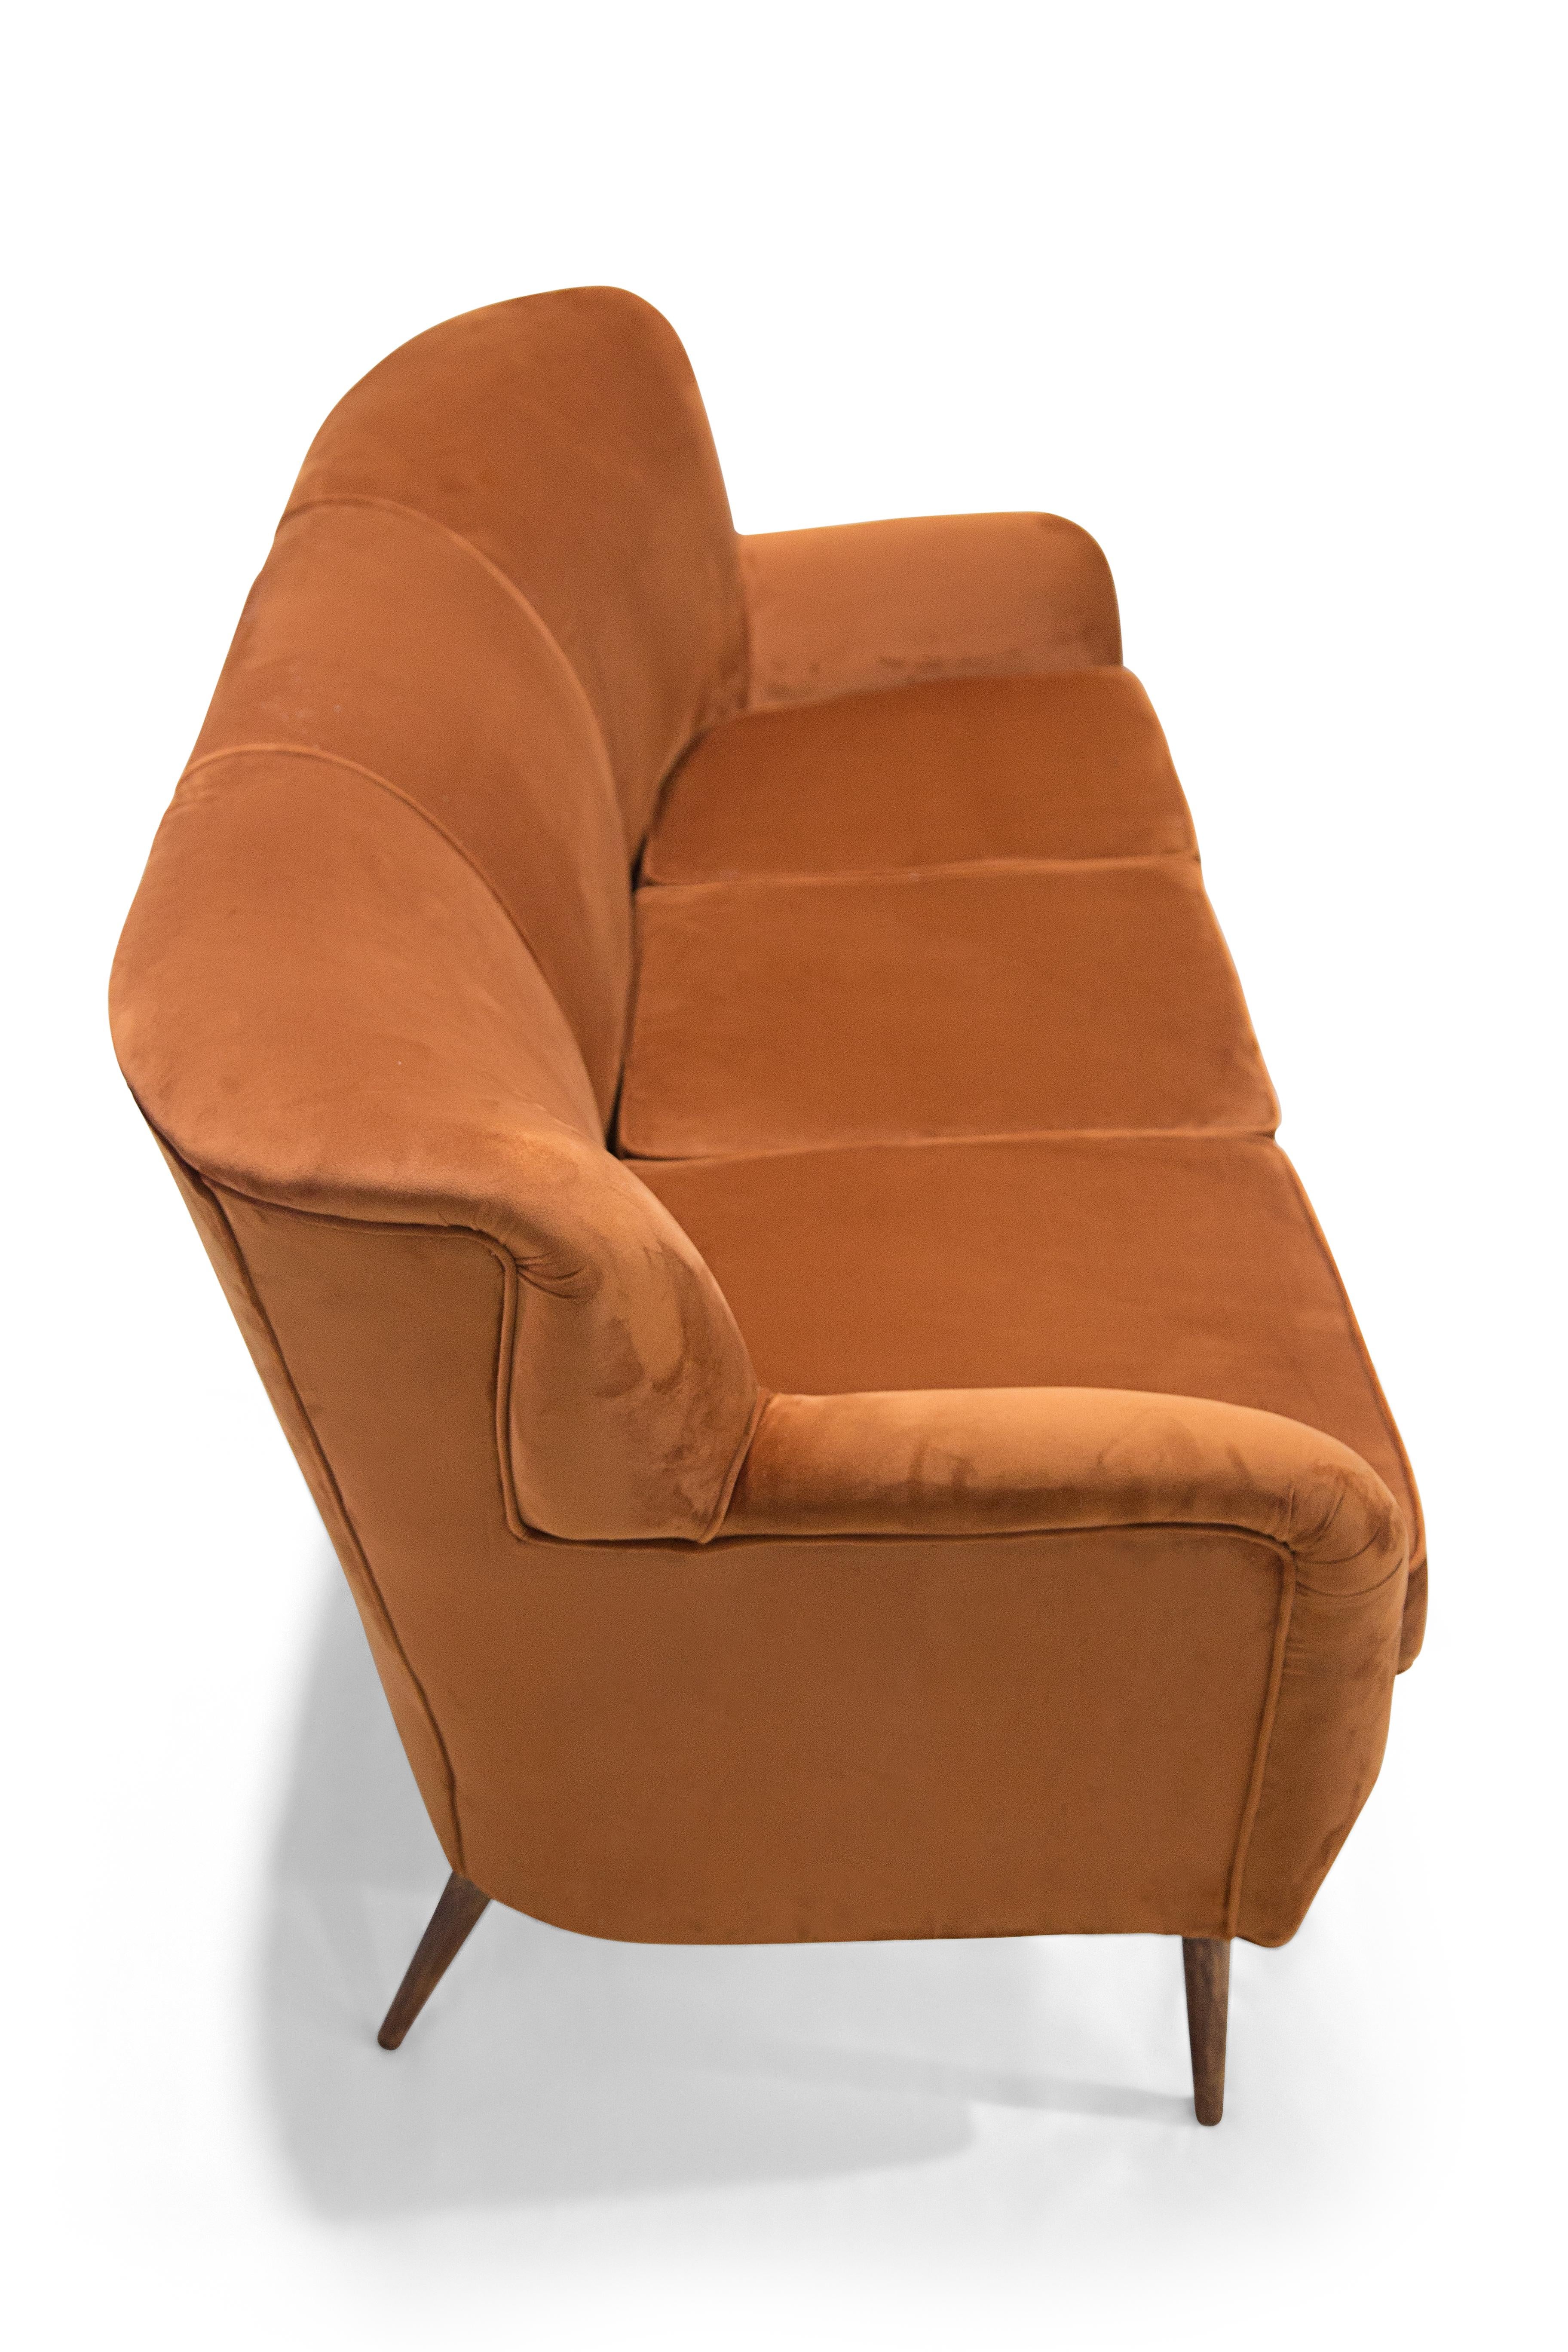 Mid-Century Modern Brazilian Modern Three Seat Sofa in Ochre Velvet & Hardwood by Forma, Brazil For Sale